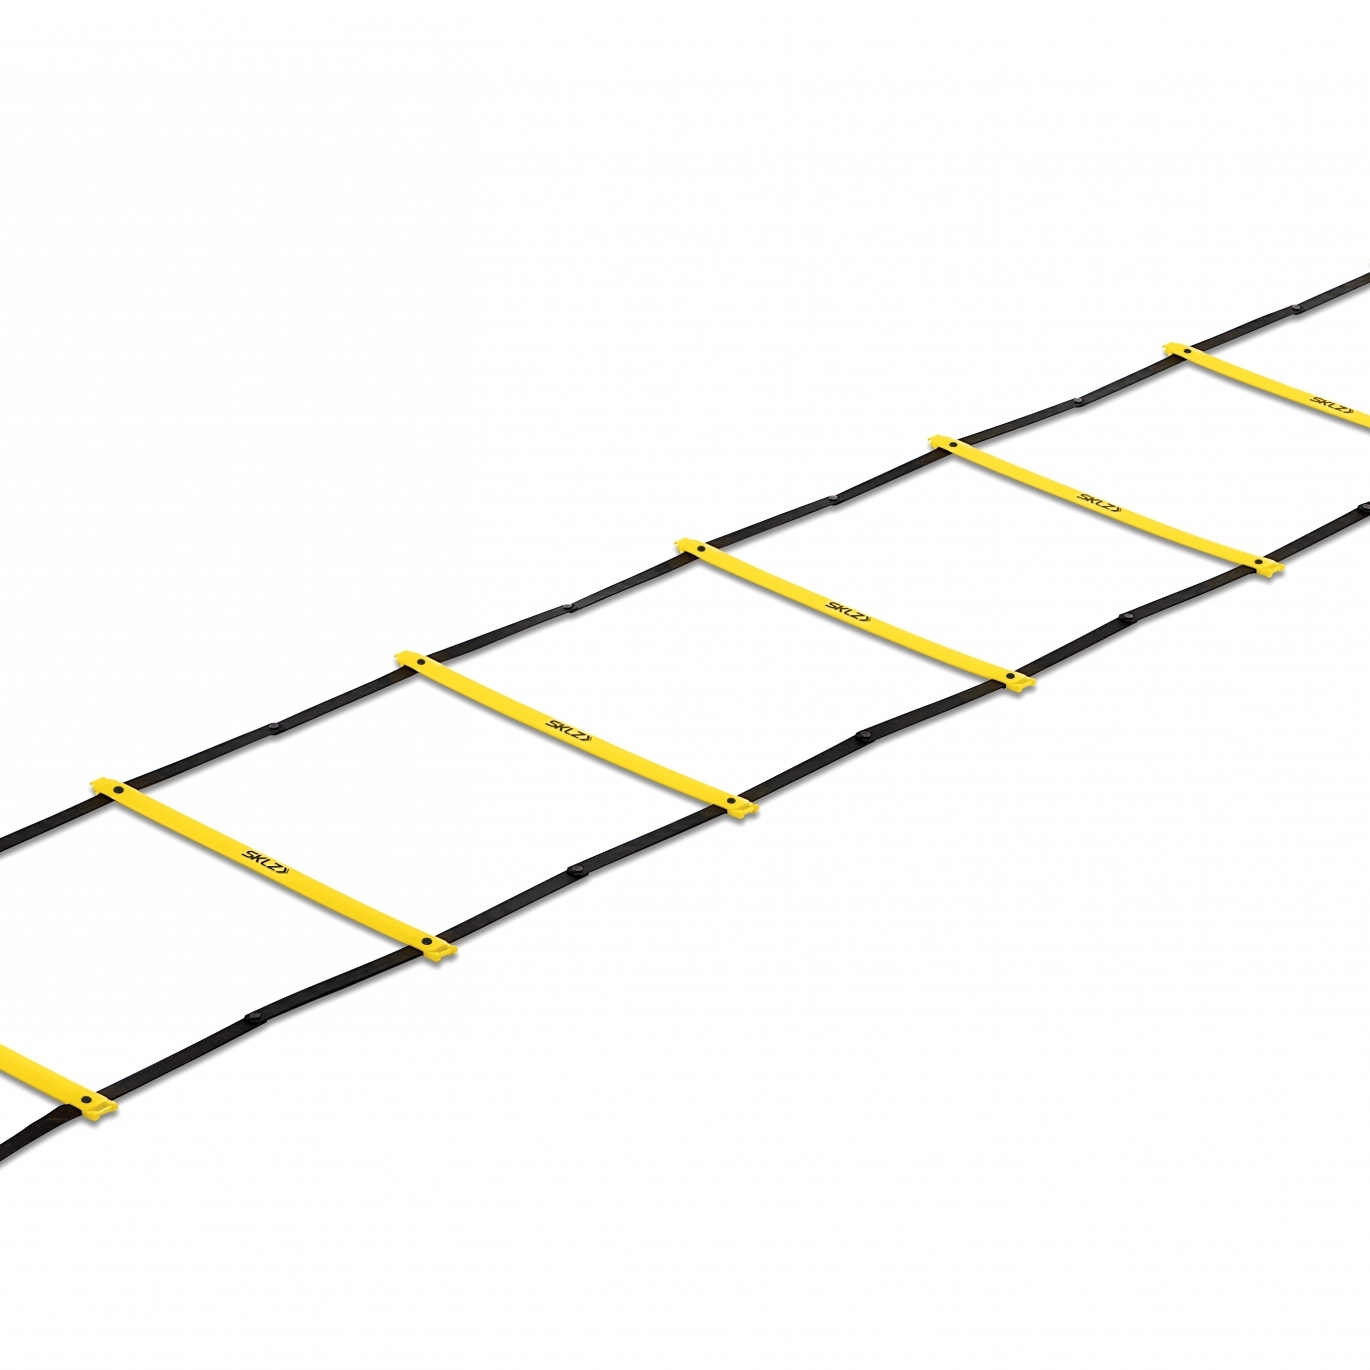 Координационная лестница SKLZ Quick Ladder Pro желтый/черный 3 м